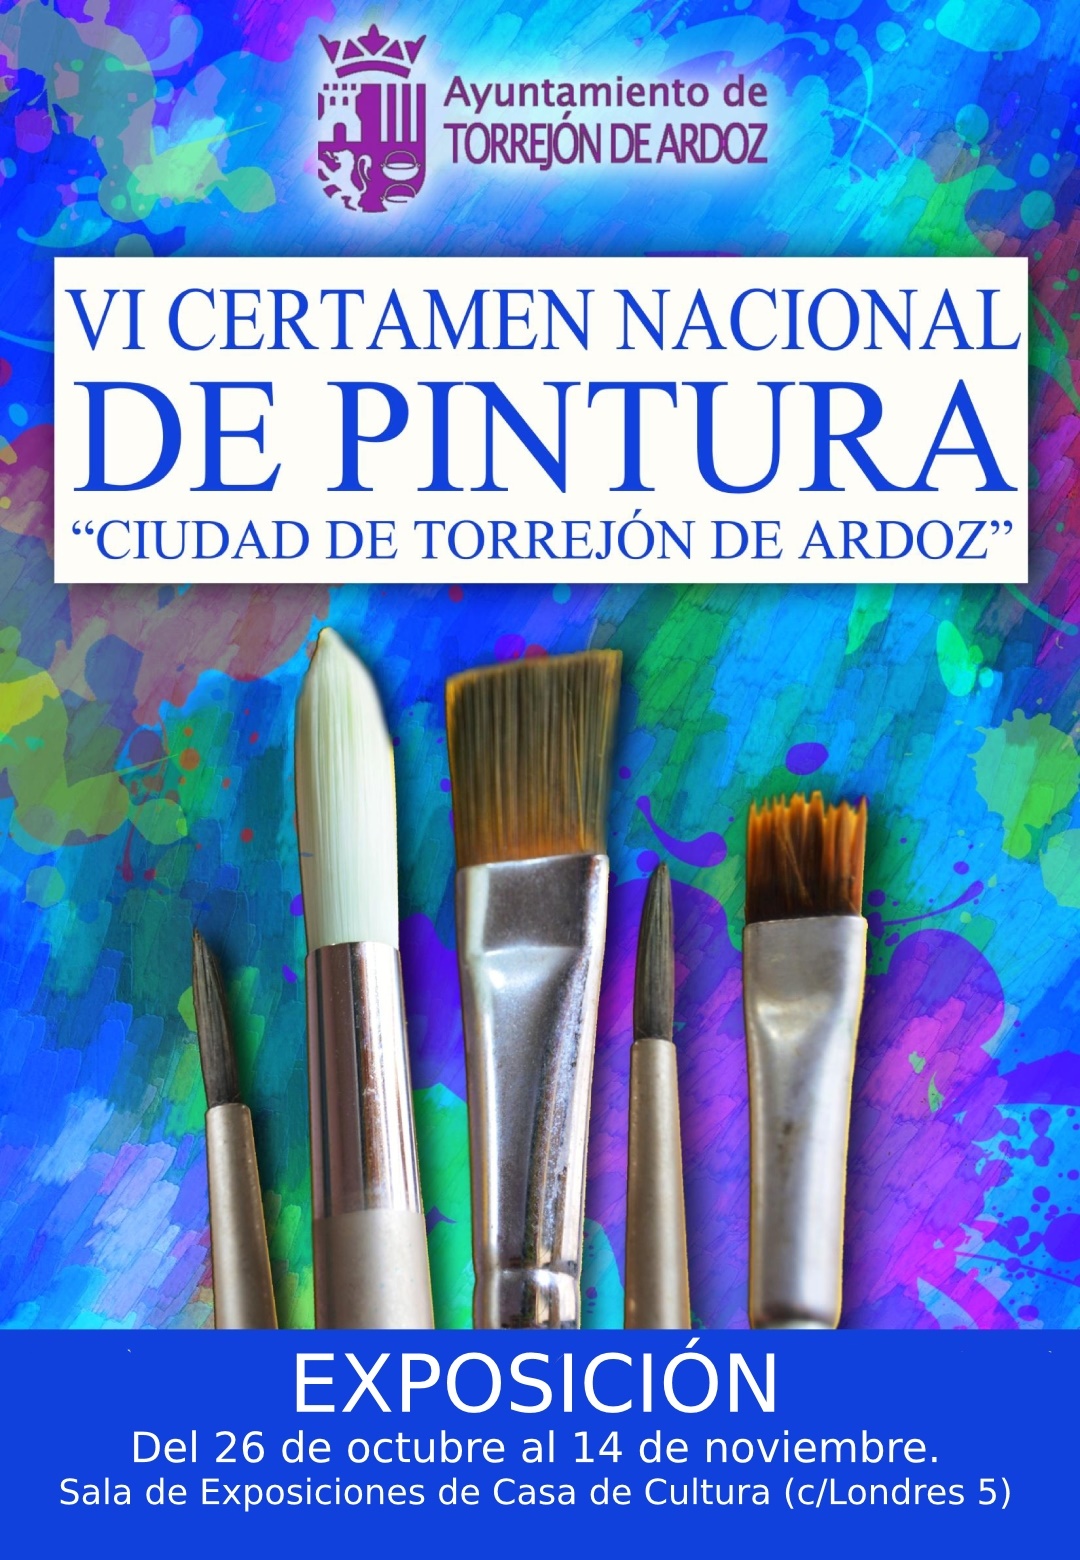 Exposición VI Certamen Nacional de Pintura de Torrejón de Ardoz